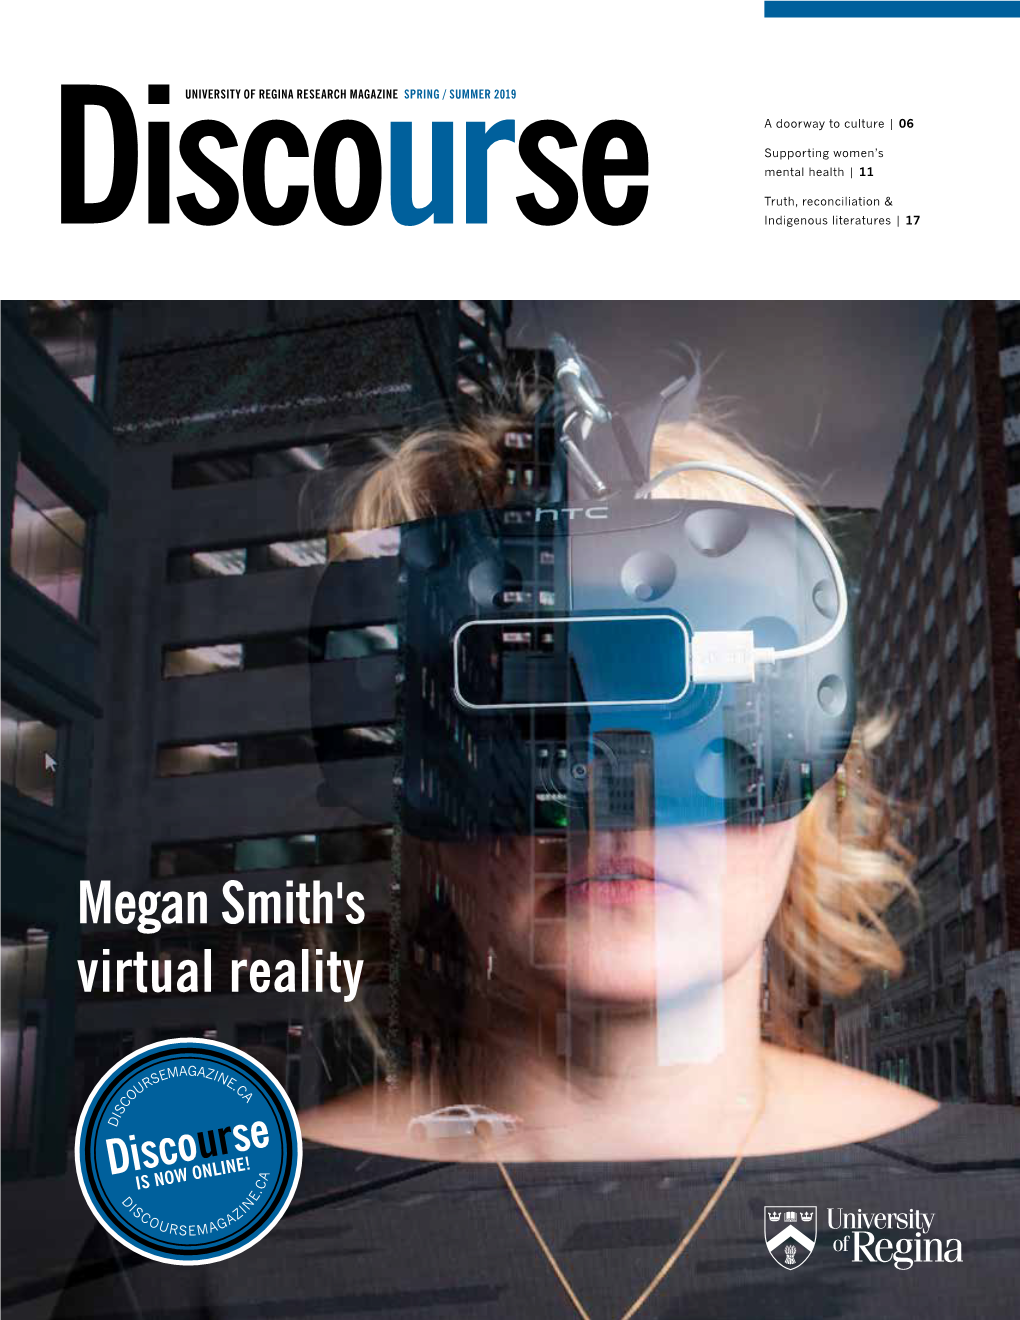 Megan Smith's Virtual Reality